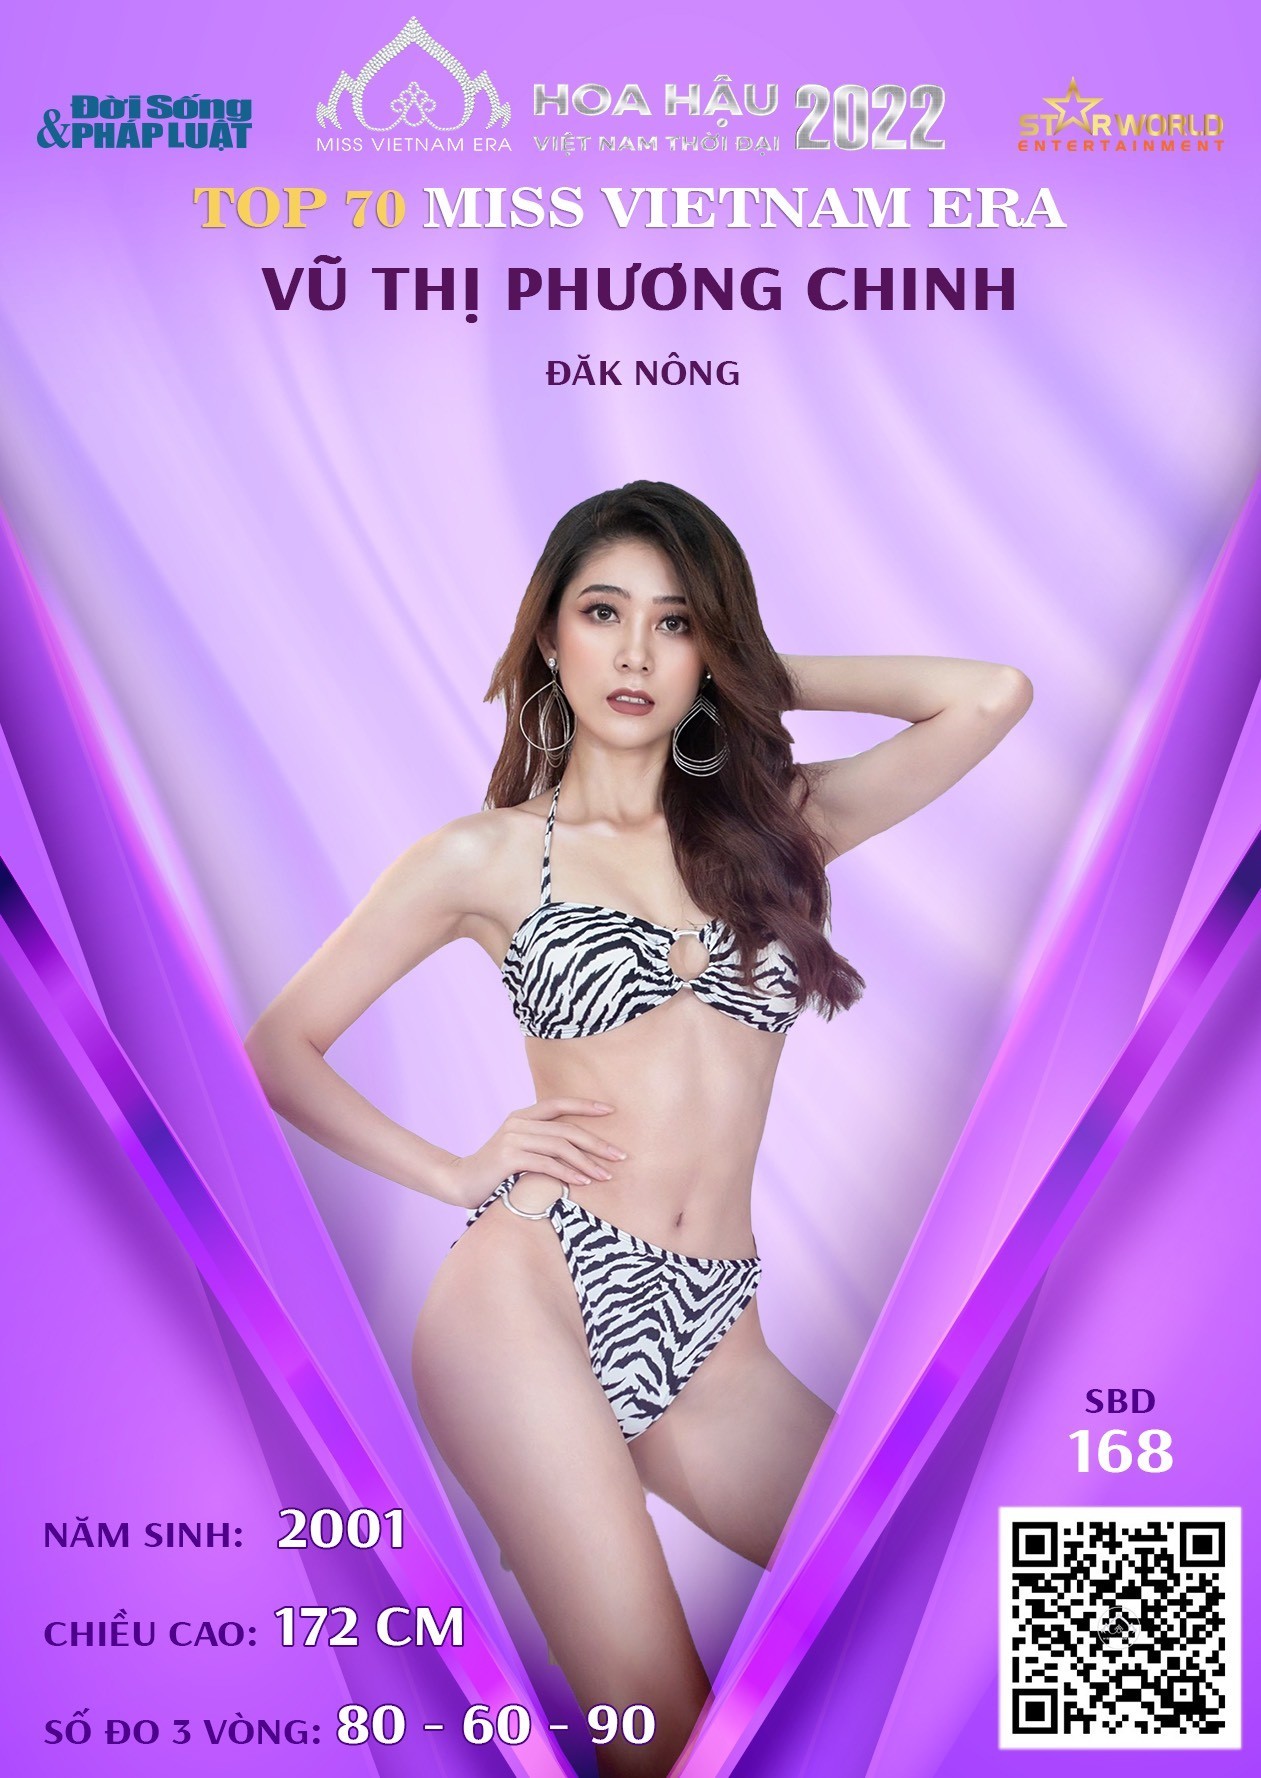 vu-thi-phuong-chinh-1660551607-1660636277.jpg